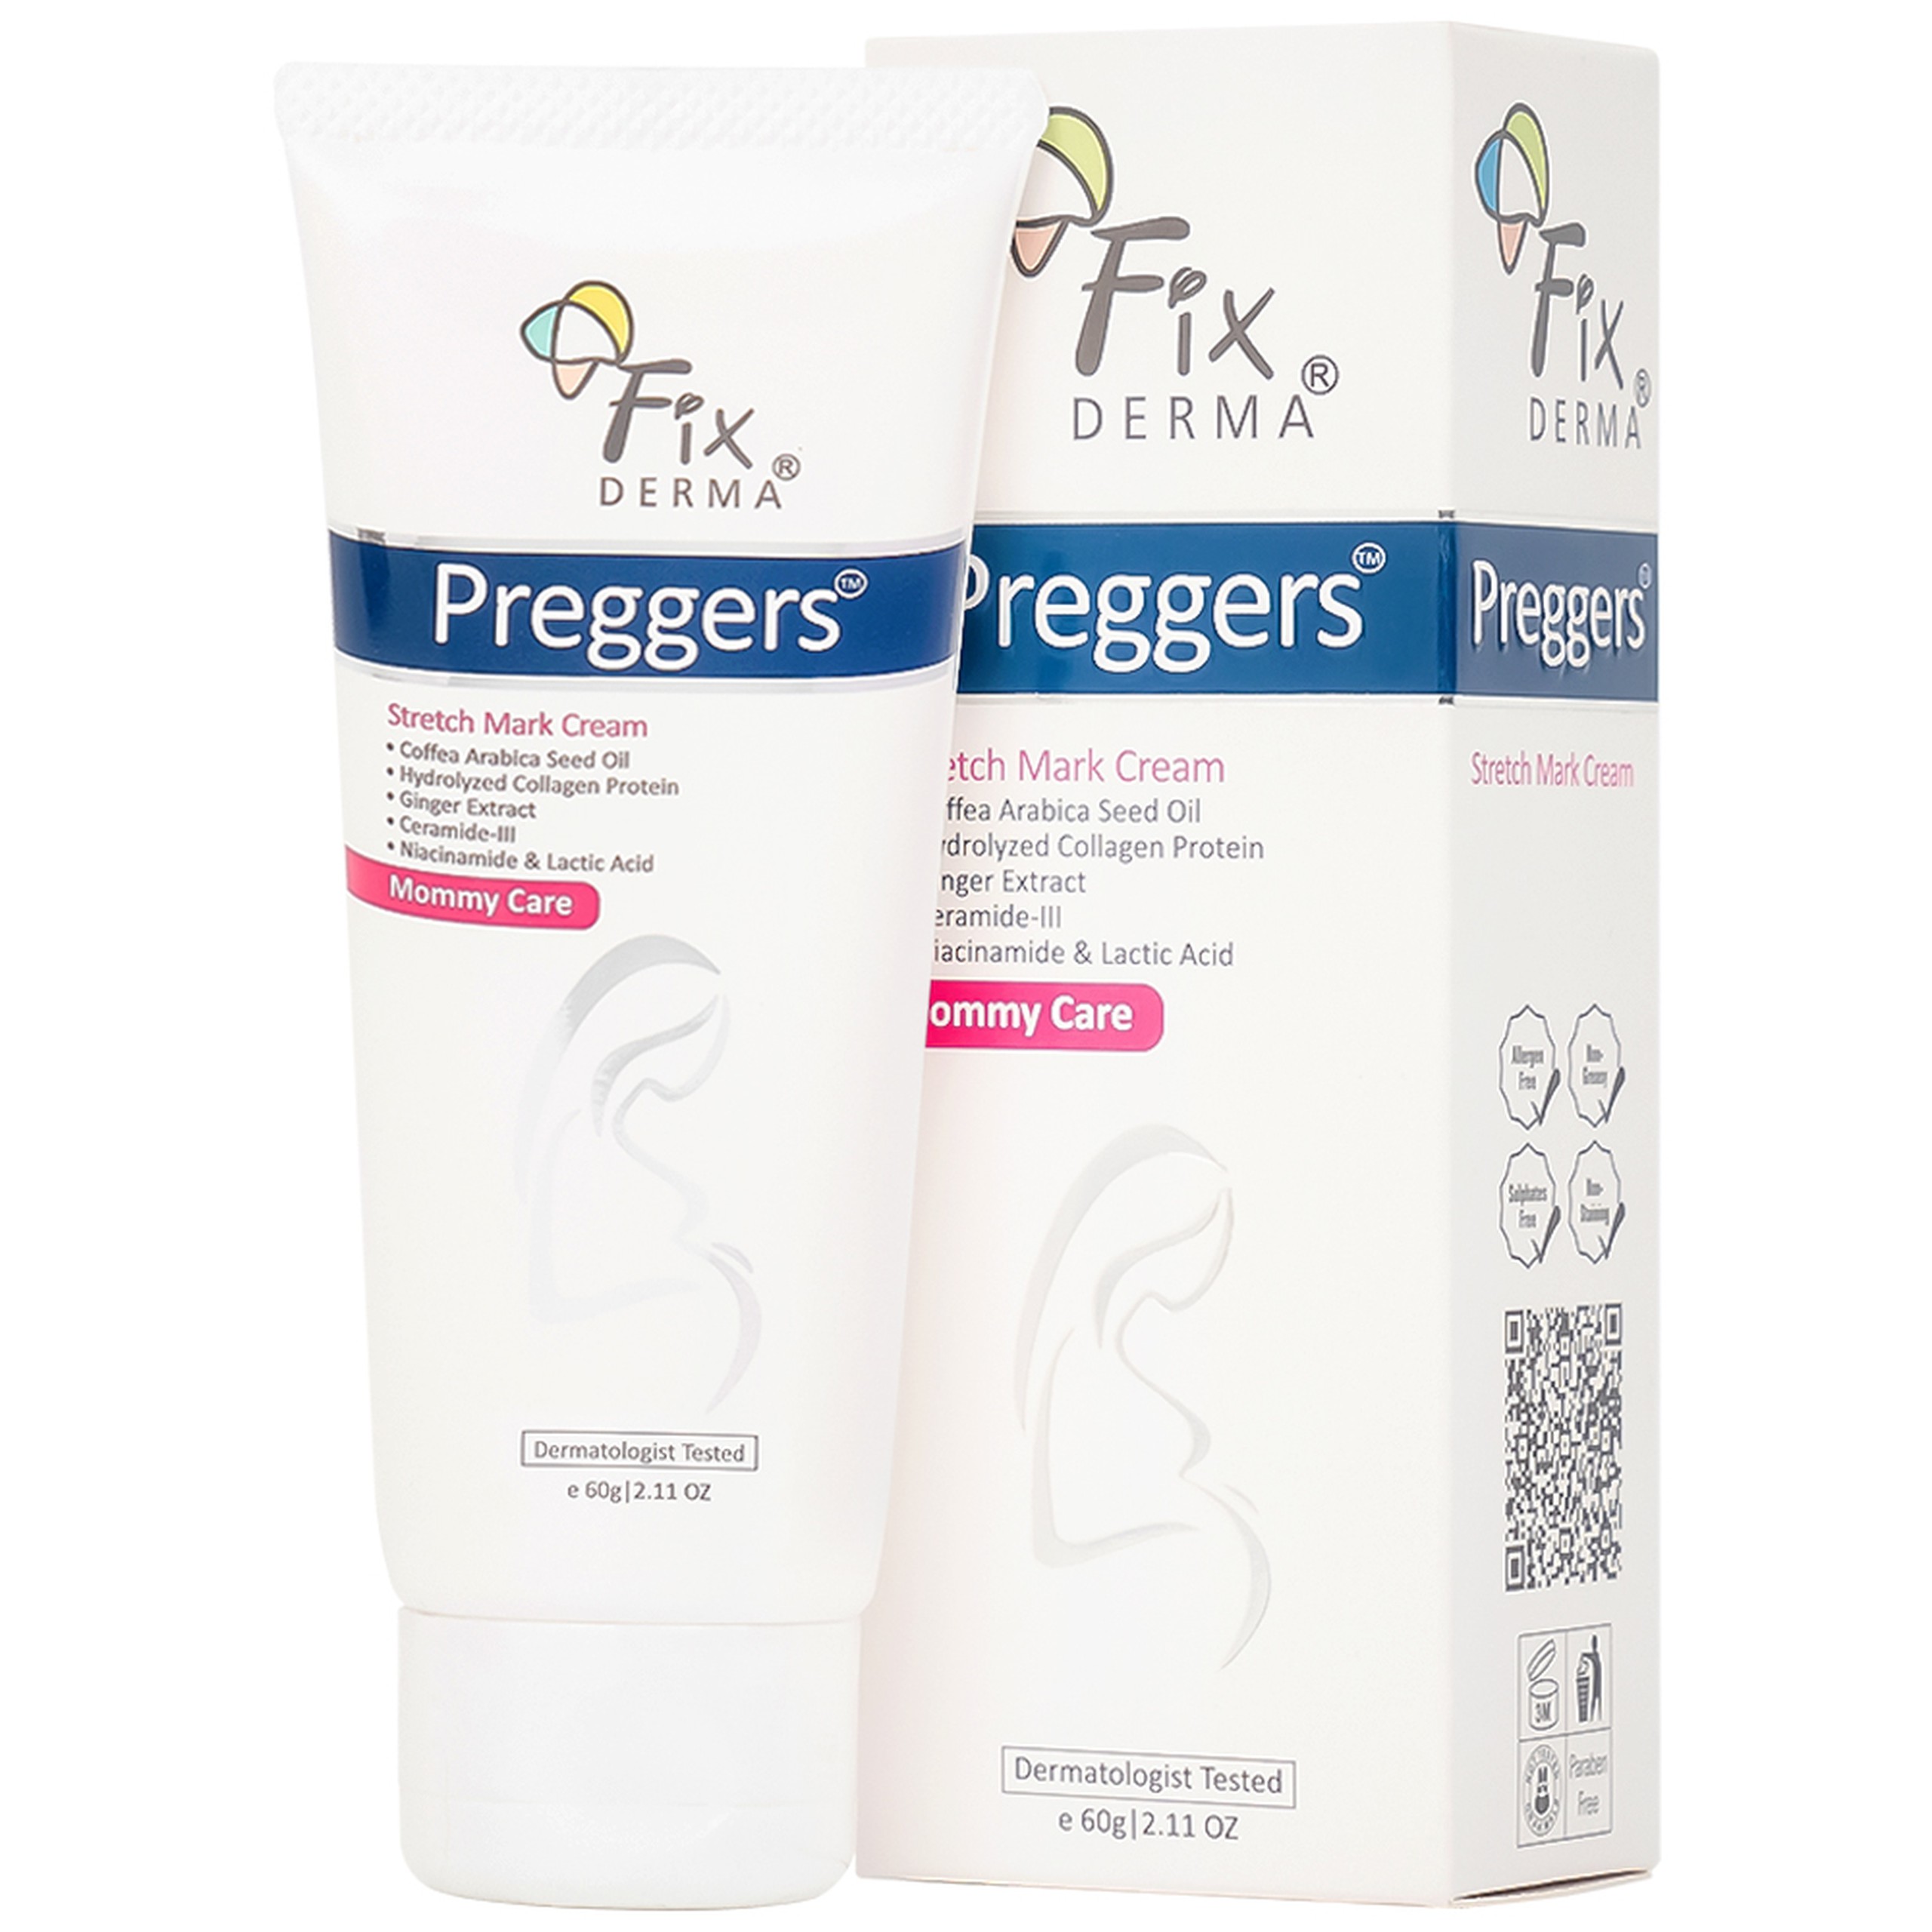 Kem bôi da Fixderma Preggers Stretch Mark Cream dưỡng ẩm, giảm rạn da cho phụ nữ mang thai và sau sinh (60g)